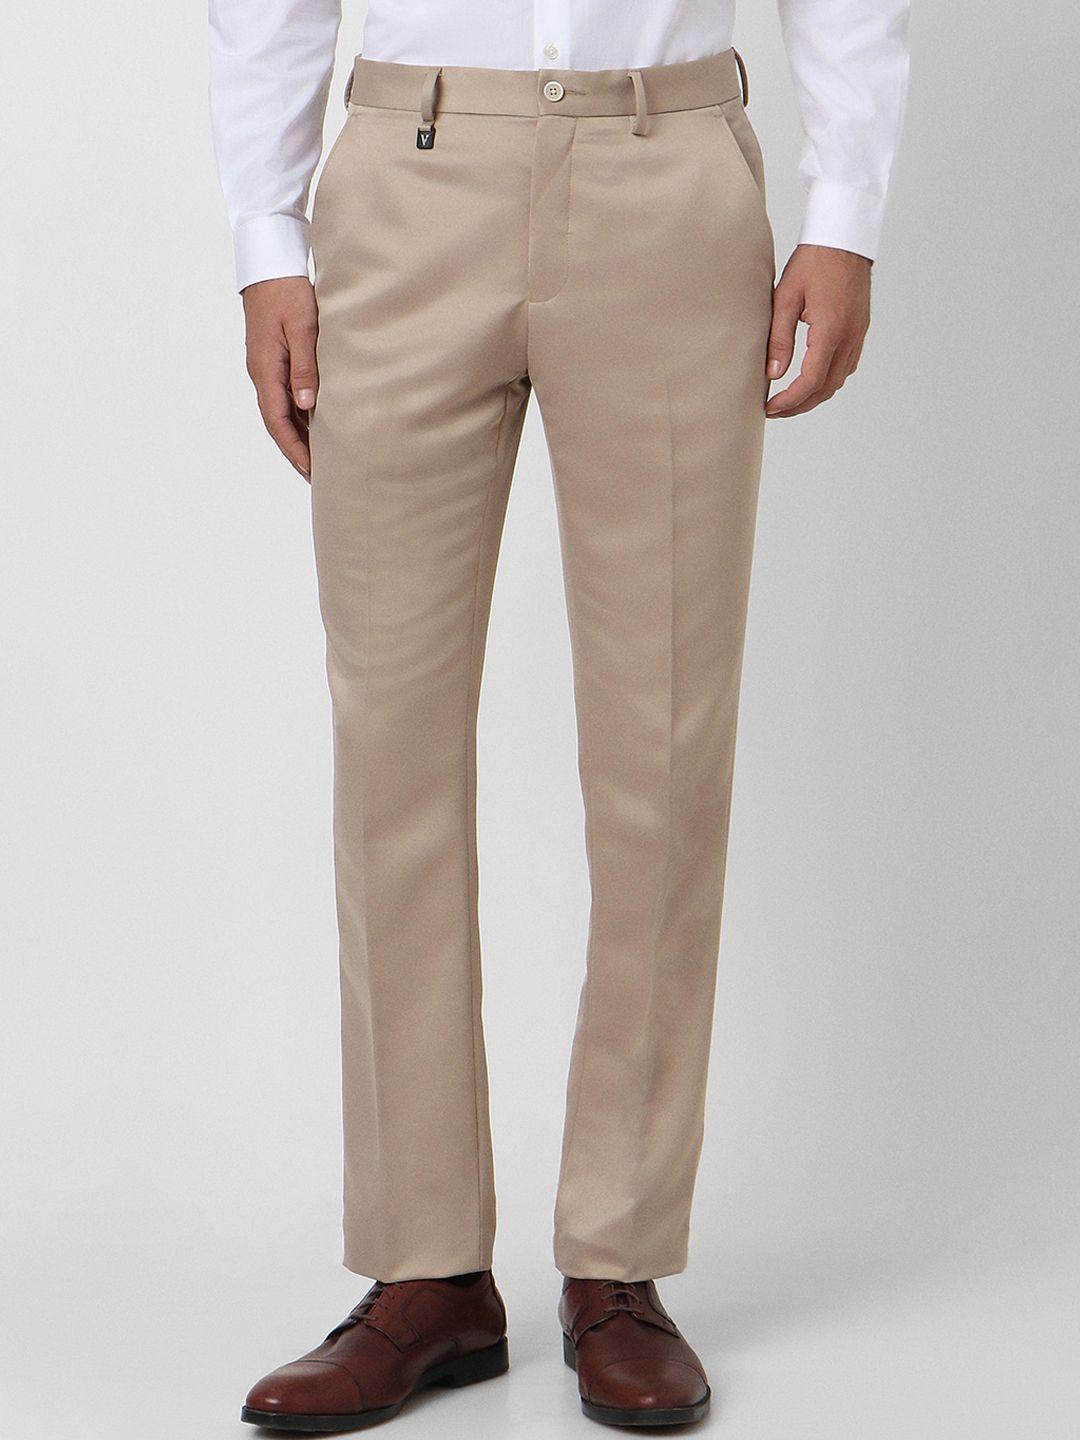 v-dot-men-skinny-fit-mid-rise-formal-trousers